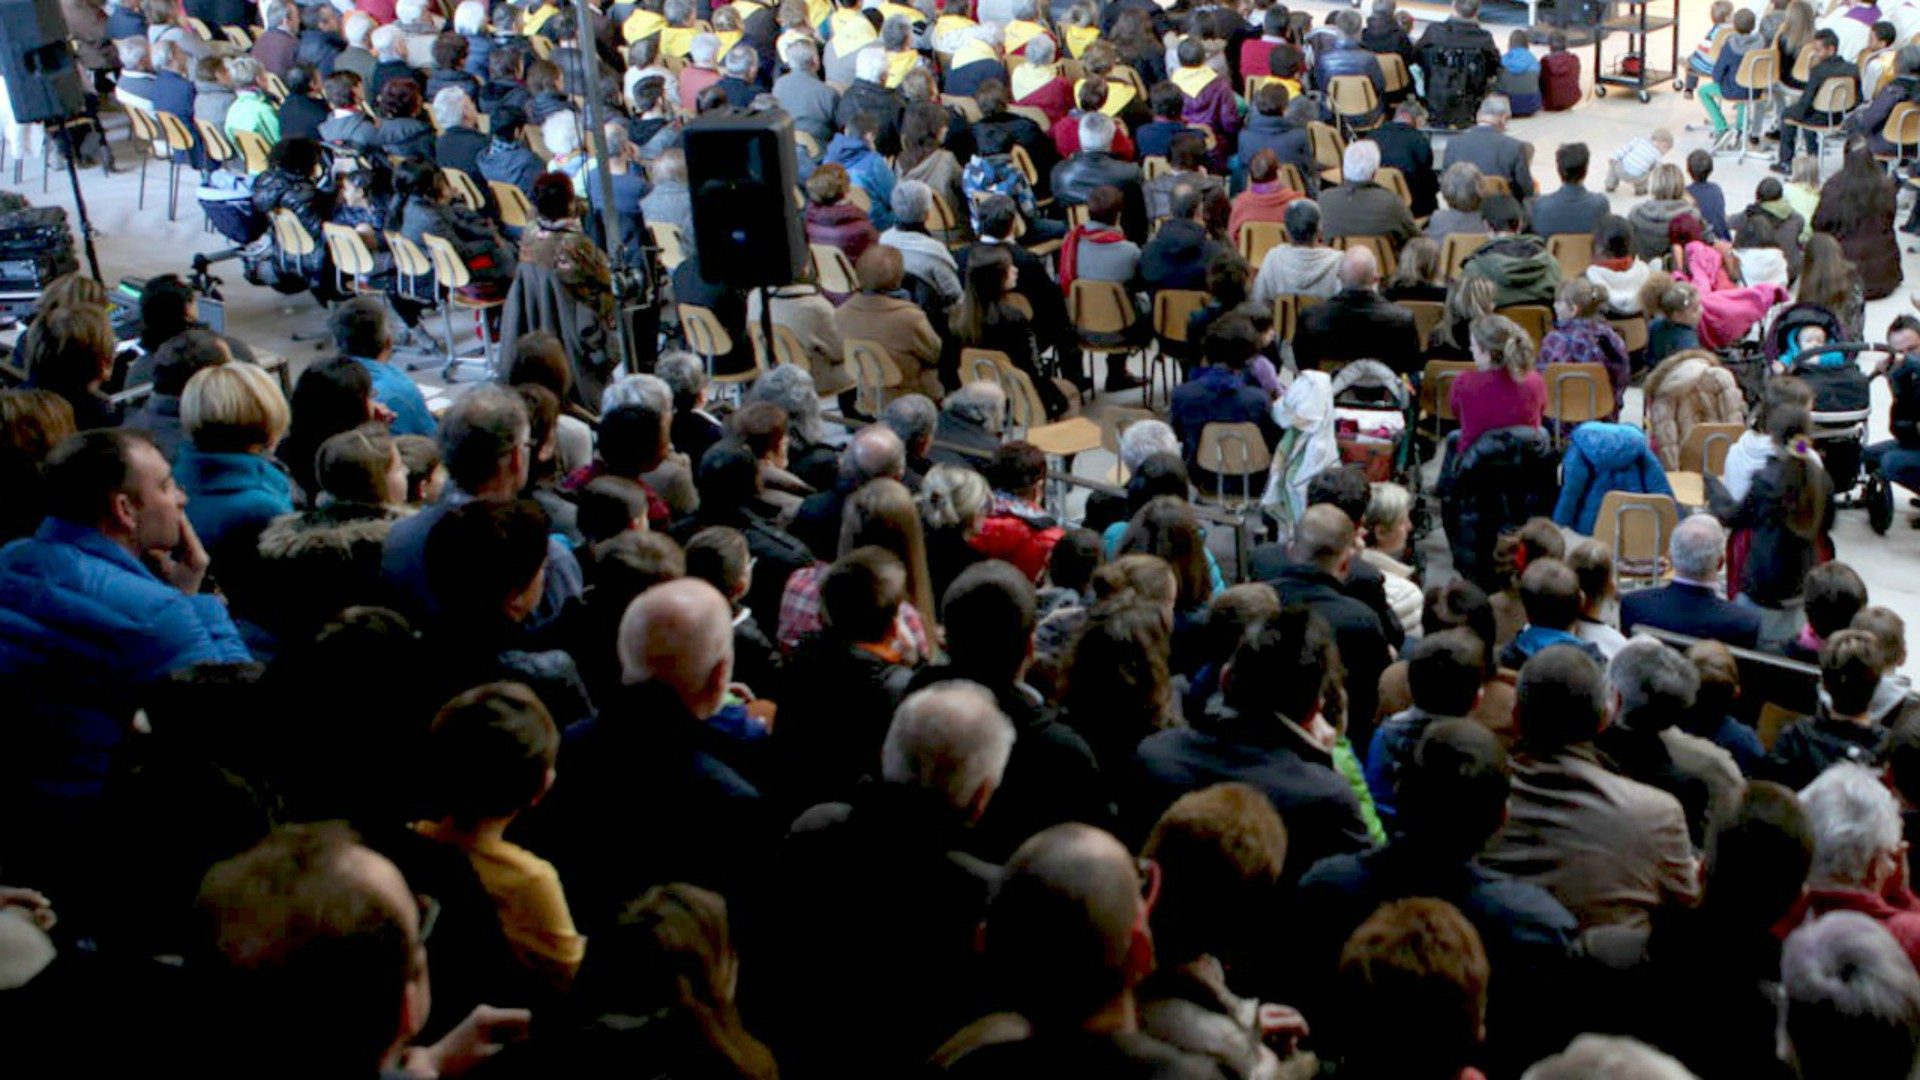 La majorité des fidèles pourront s'asseoir pendant la messe du pape | photo d'illustration: ©Bernard Hallet